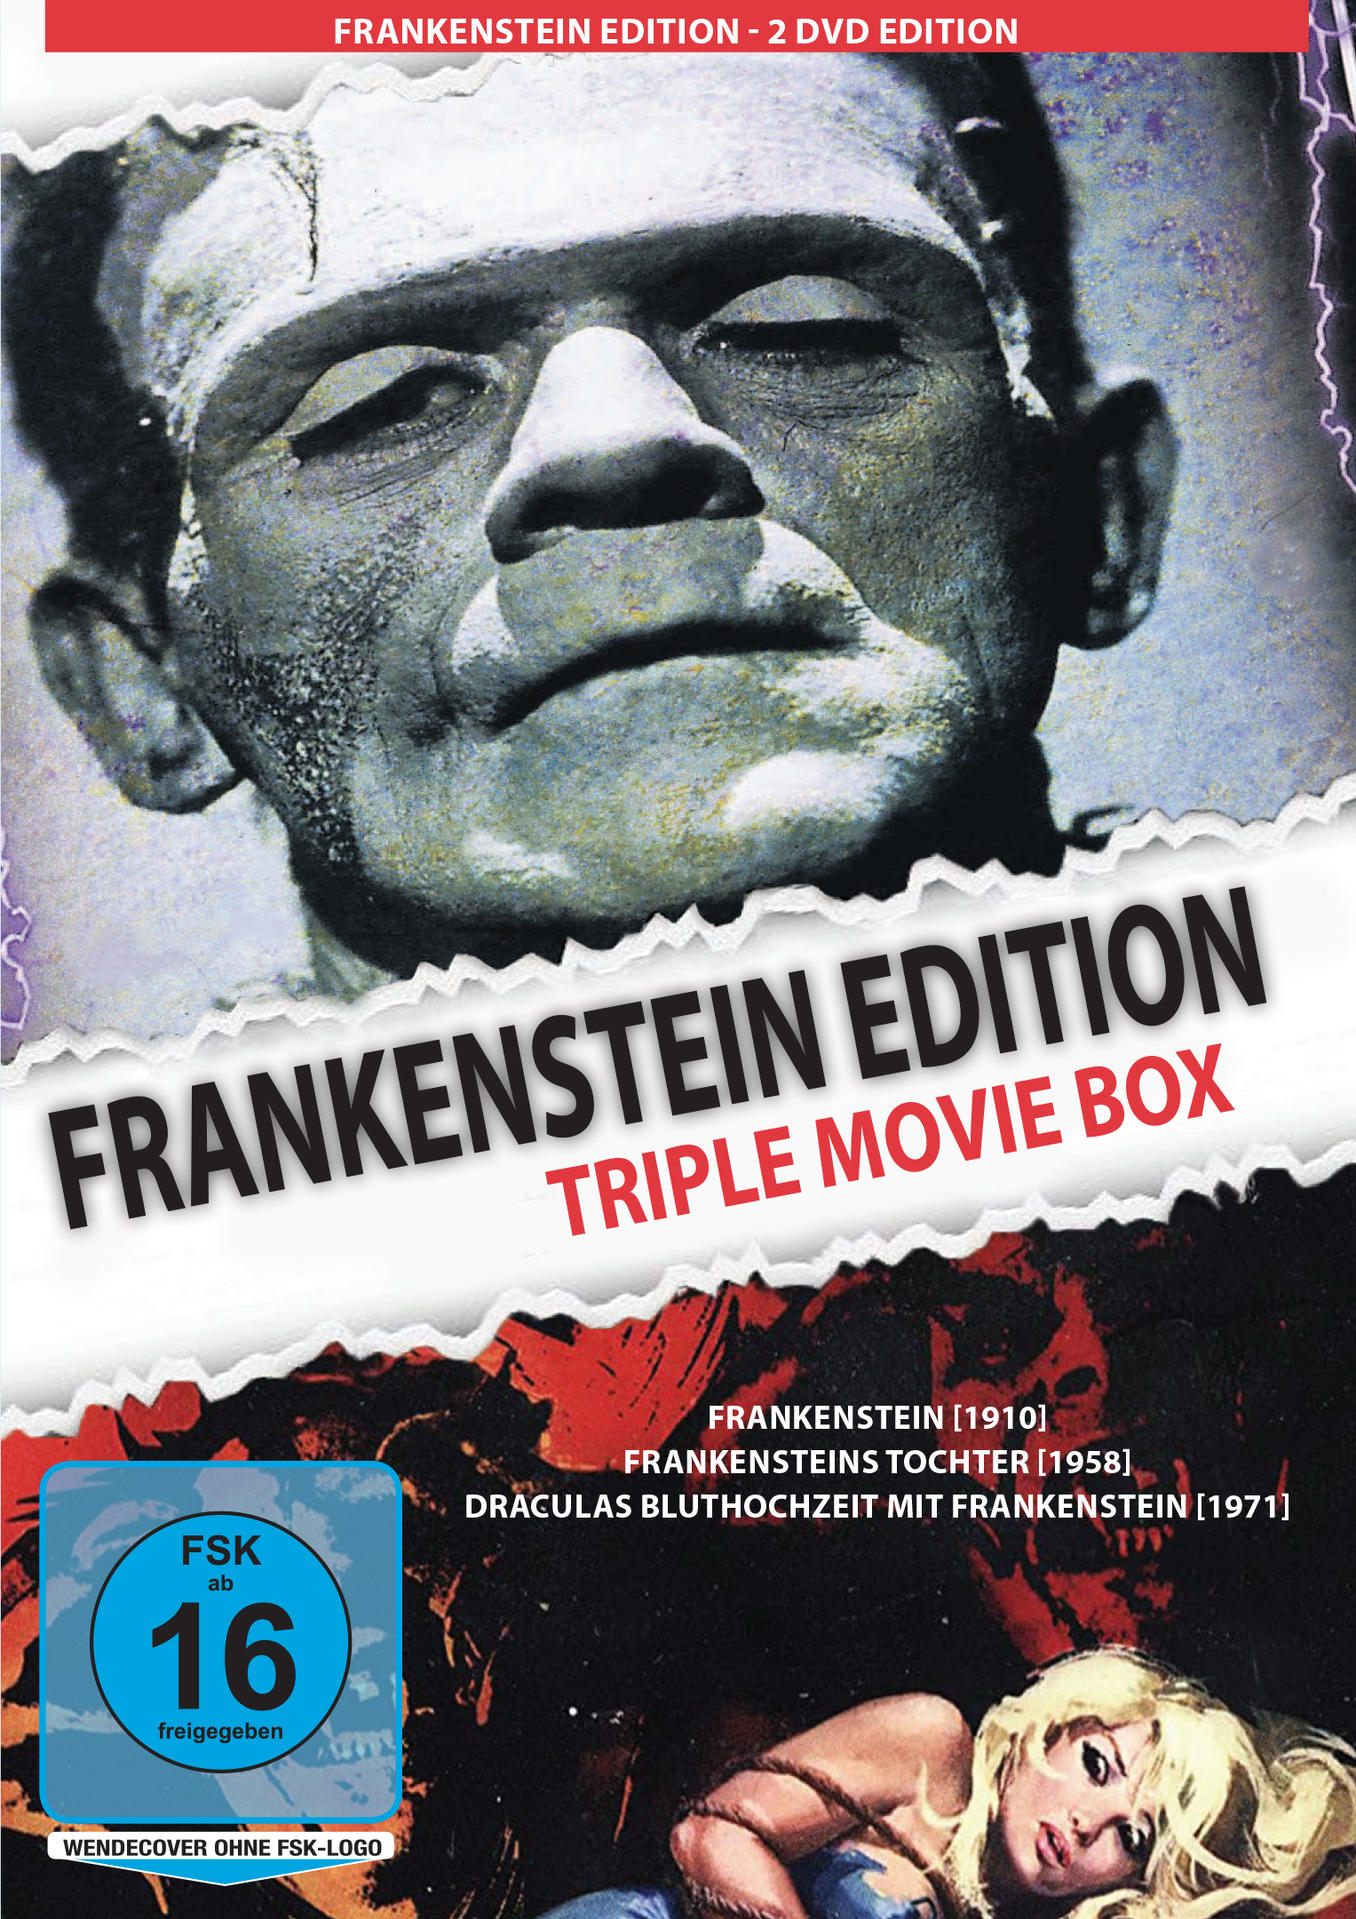 FRANKENSTEIN EDITION (TRIPLE MOVIE DVD BOX)